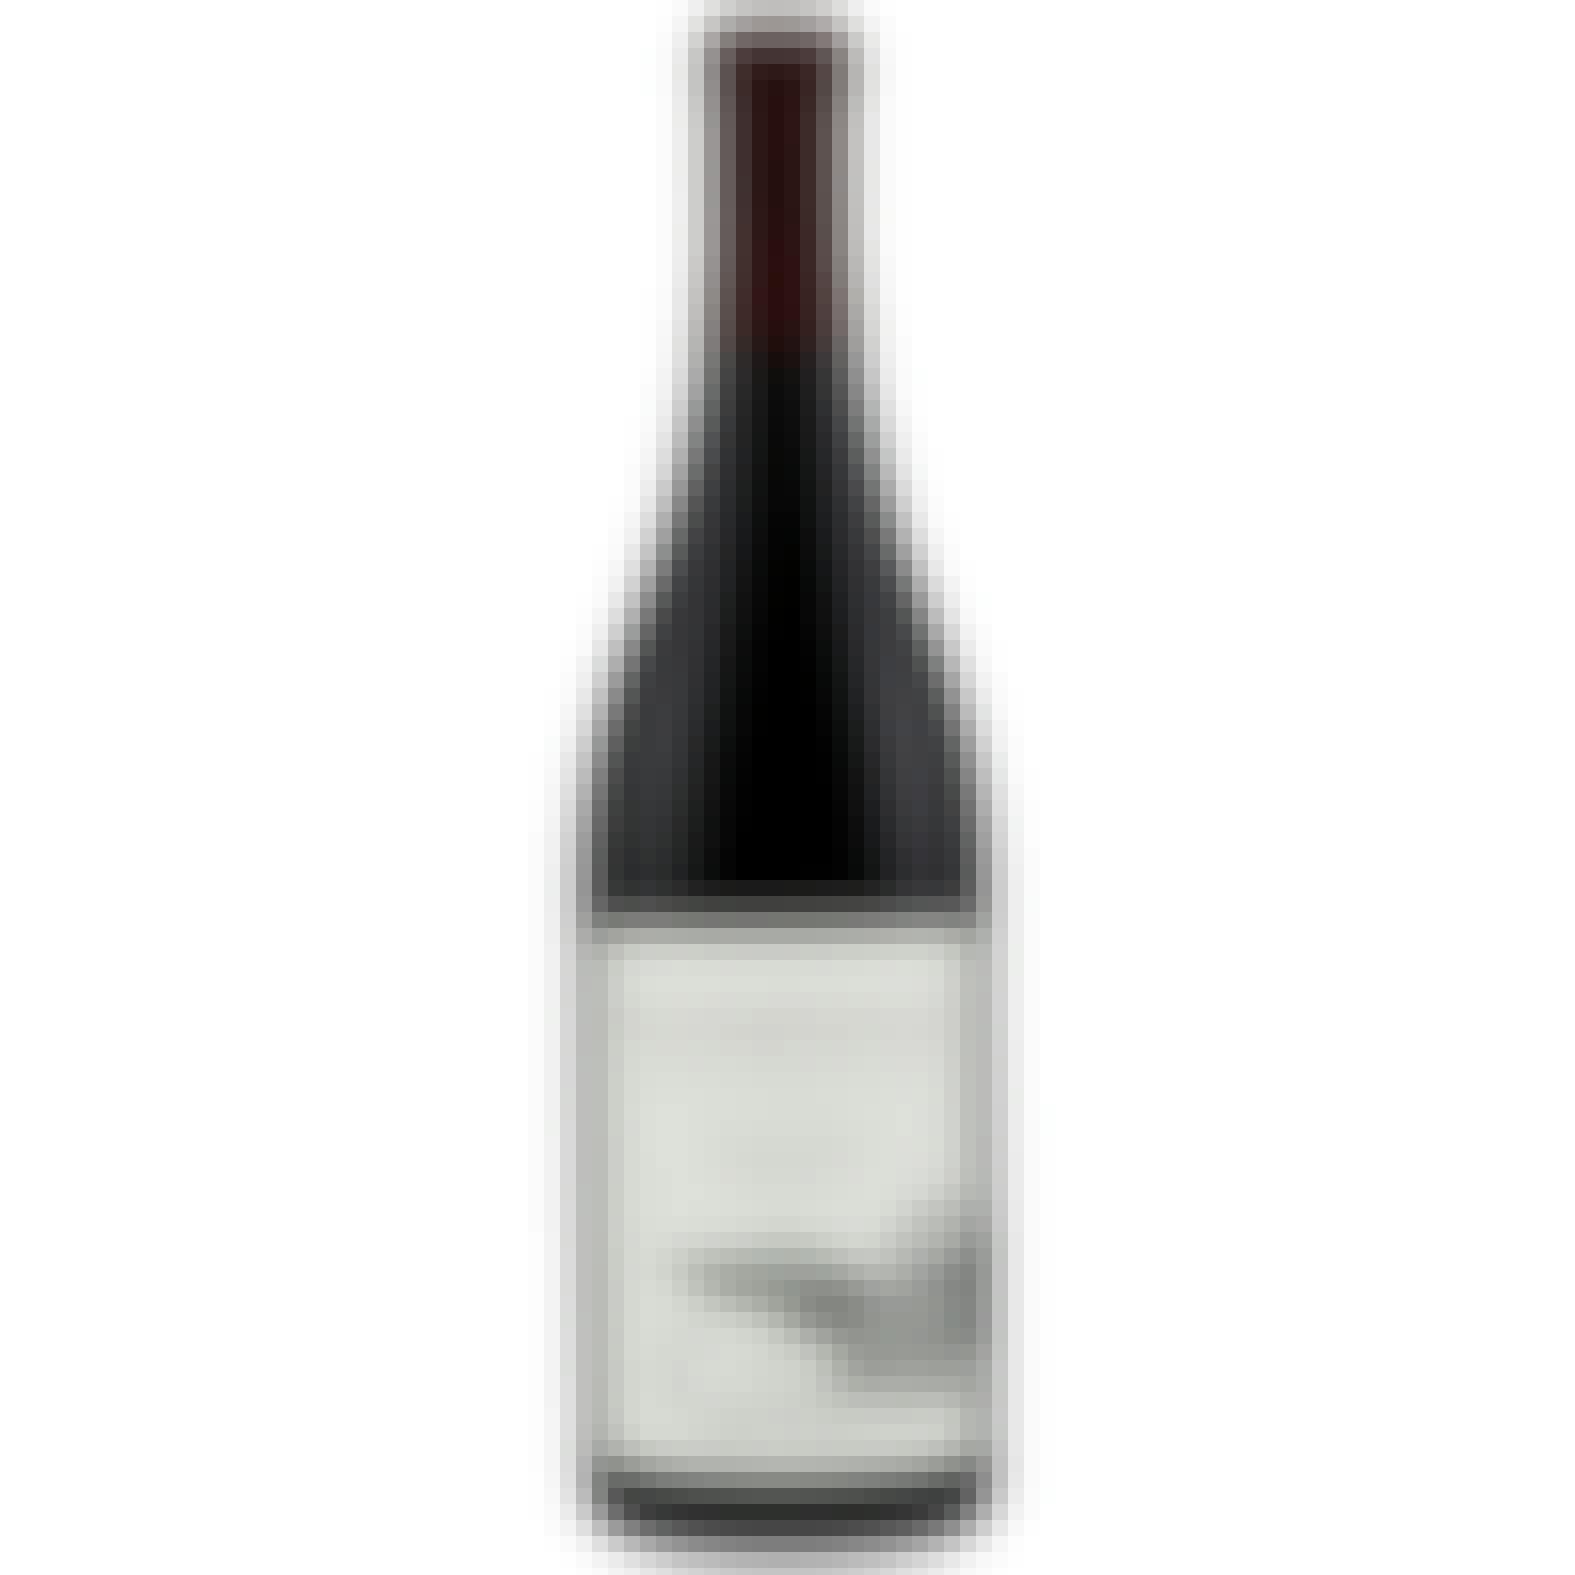 Battle Creek Unconditional Pinot Noir 750ml